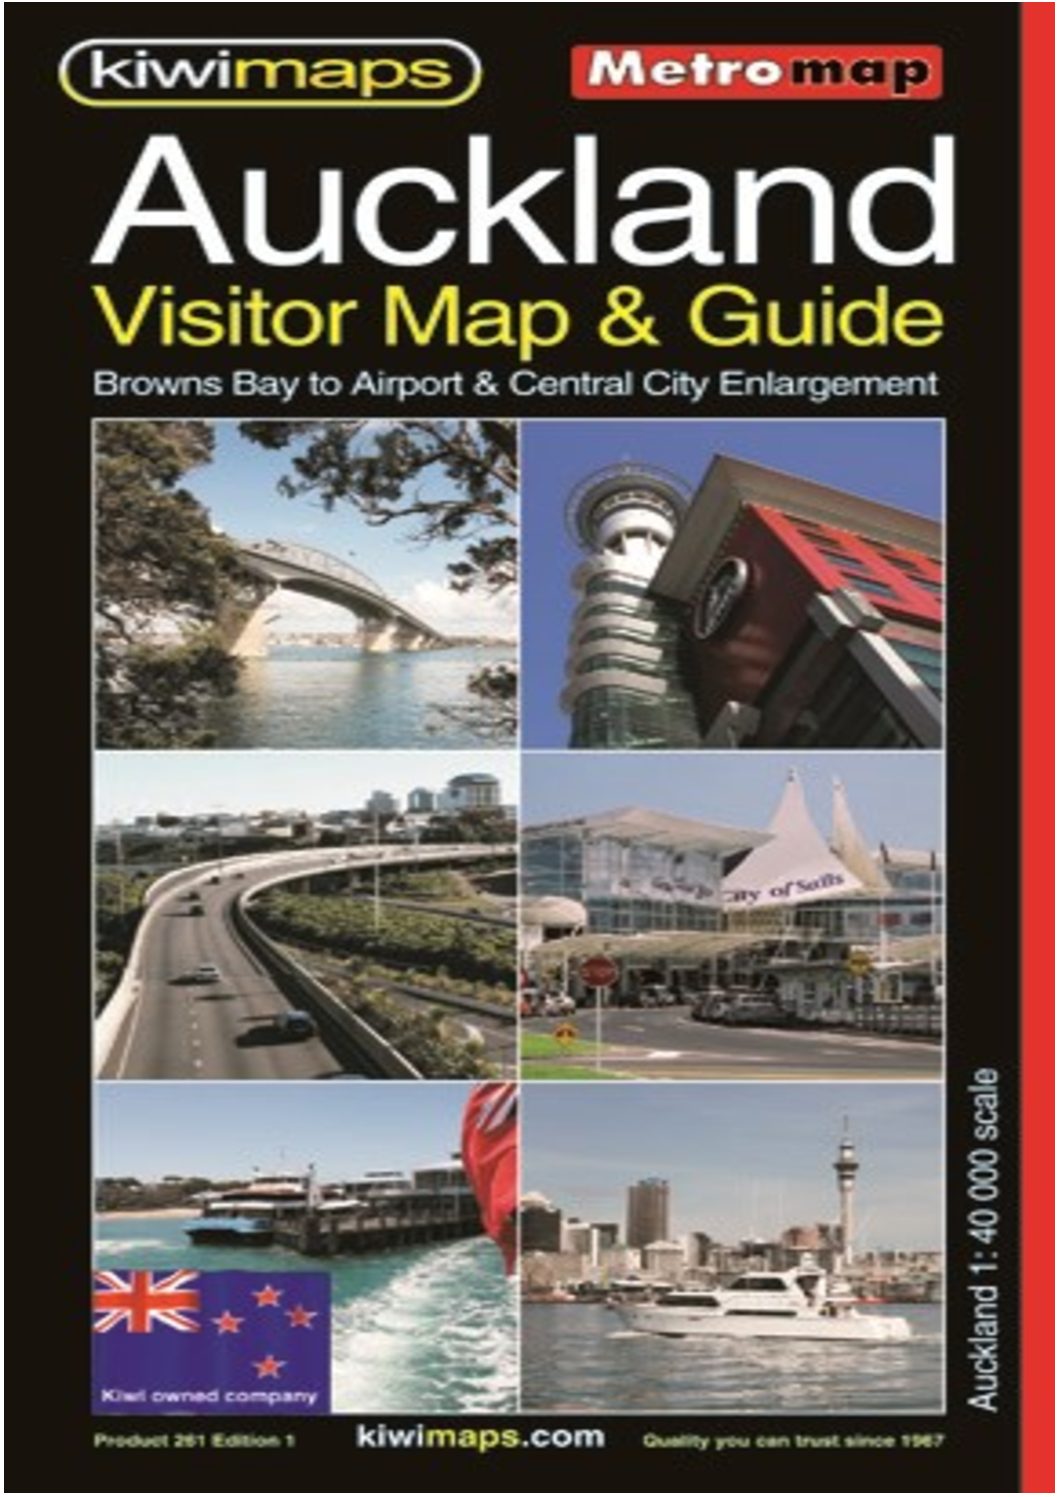 Auckland visitor & guide metro map – mapco nz ltd – maori, pacific.